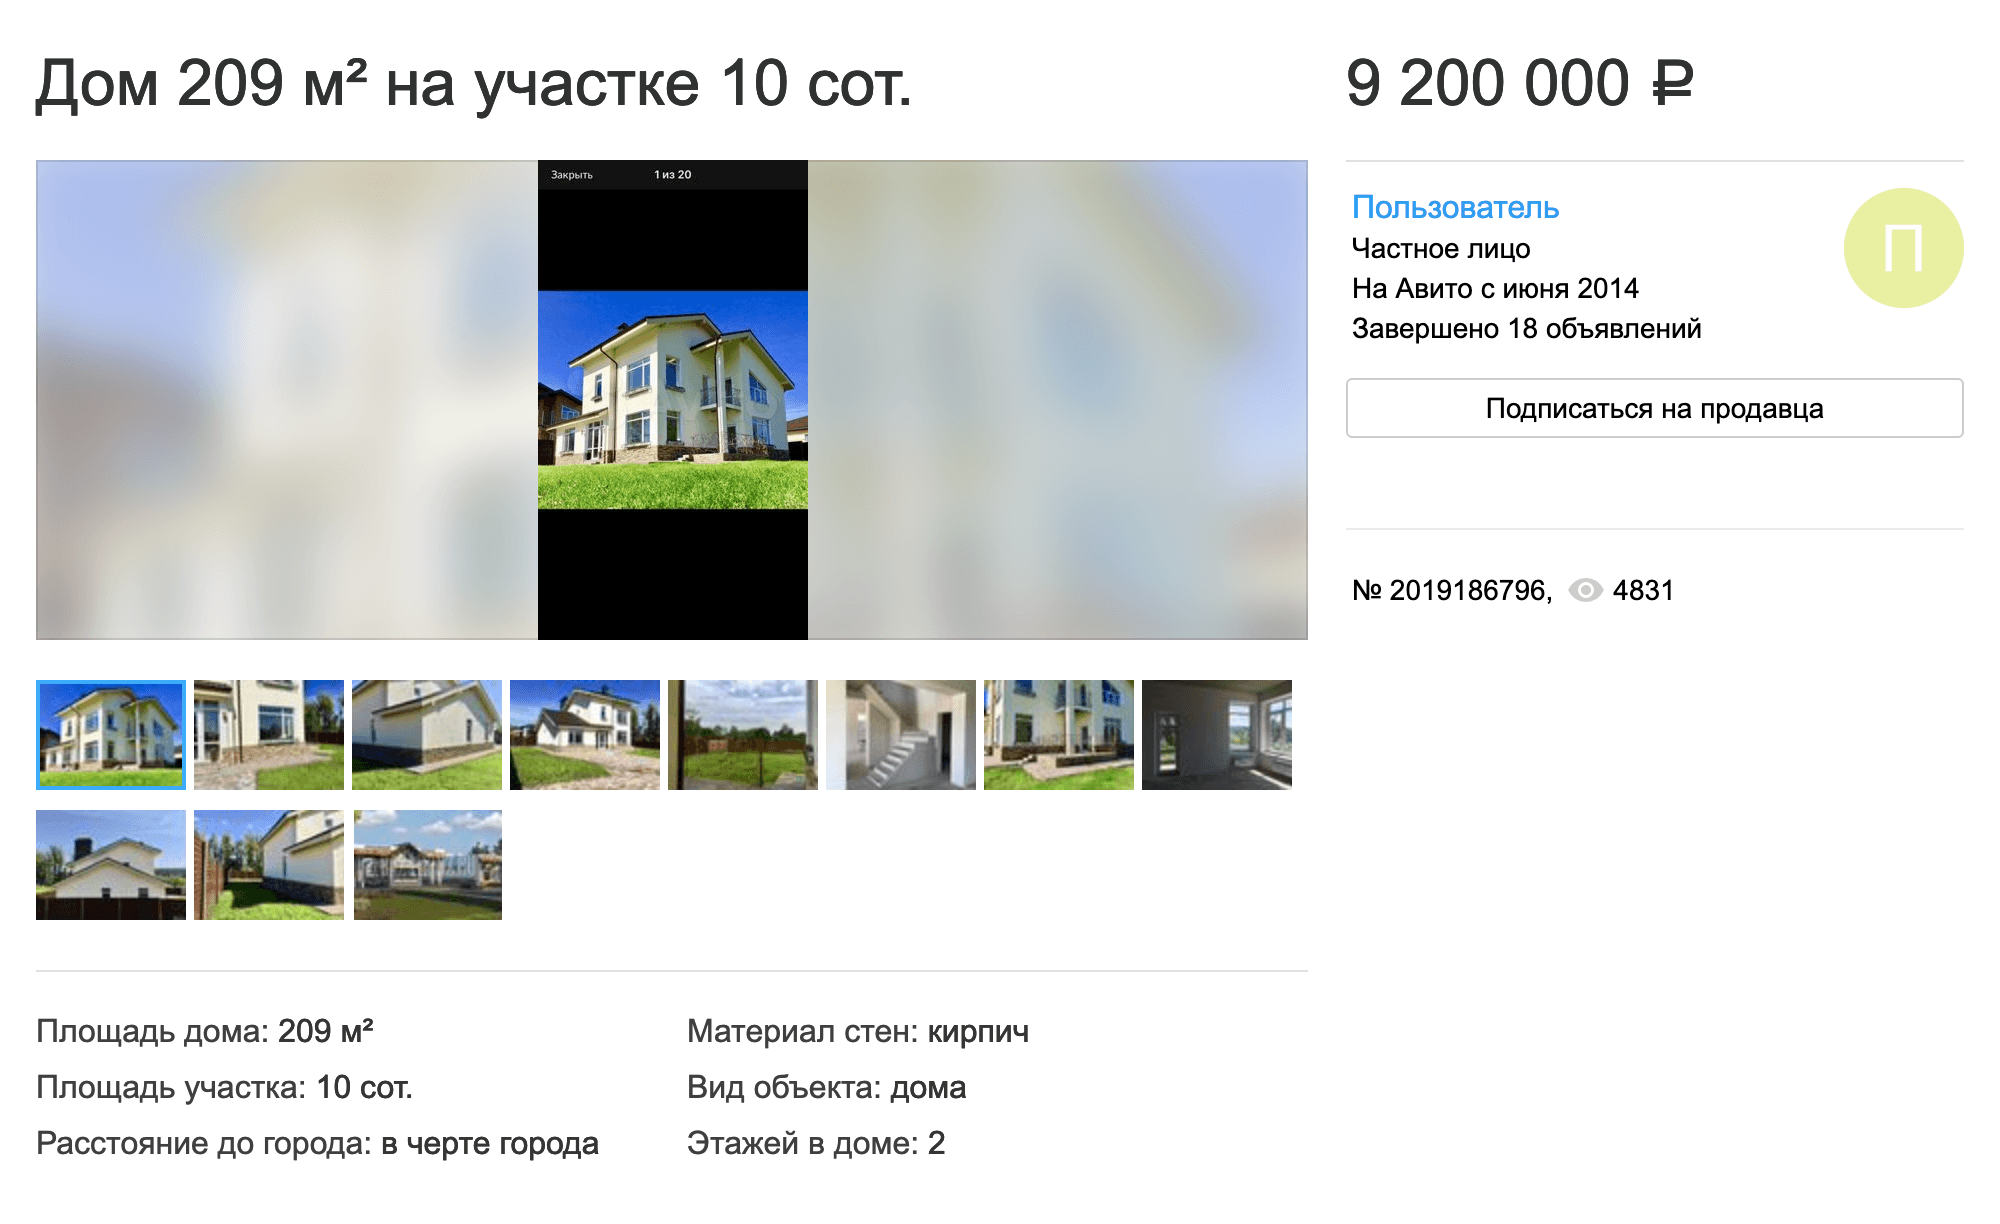 Самое бюджетное предложение дома в «Дубраве» — 9,2 млн рублей